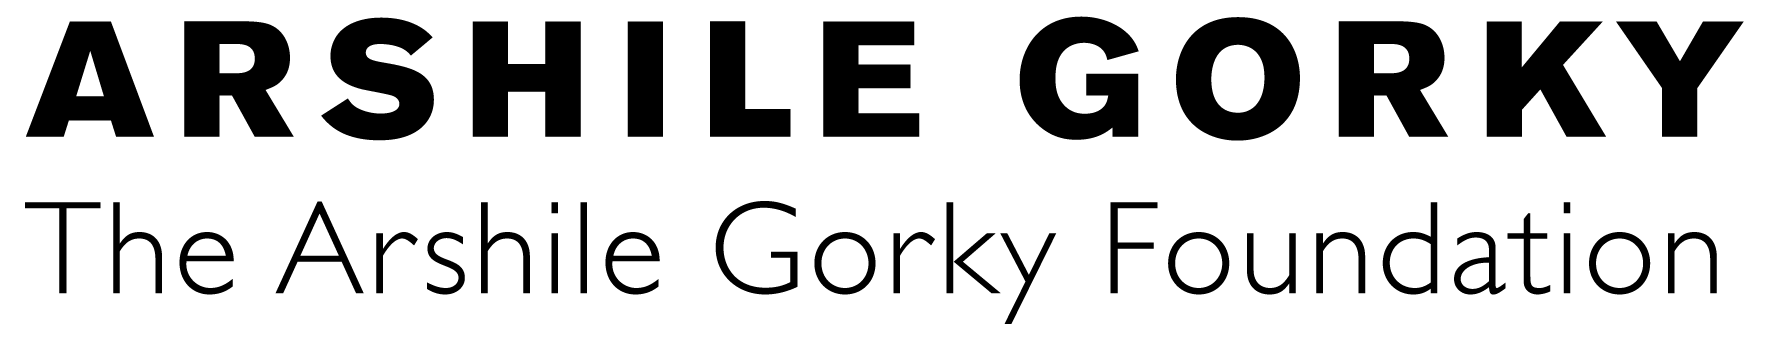 Arshile Gorky Foundation Logo